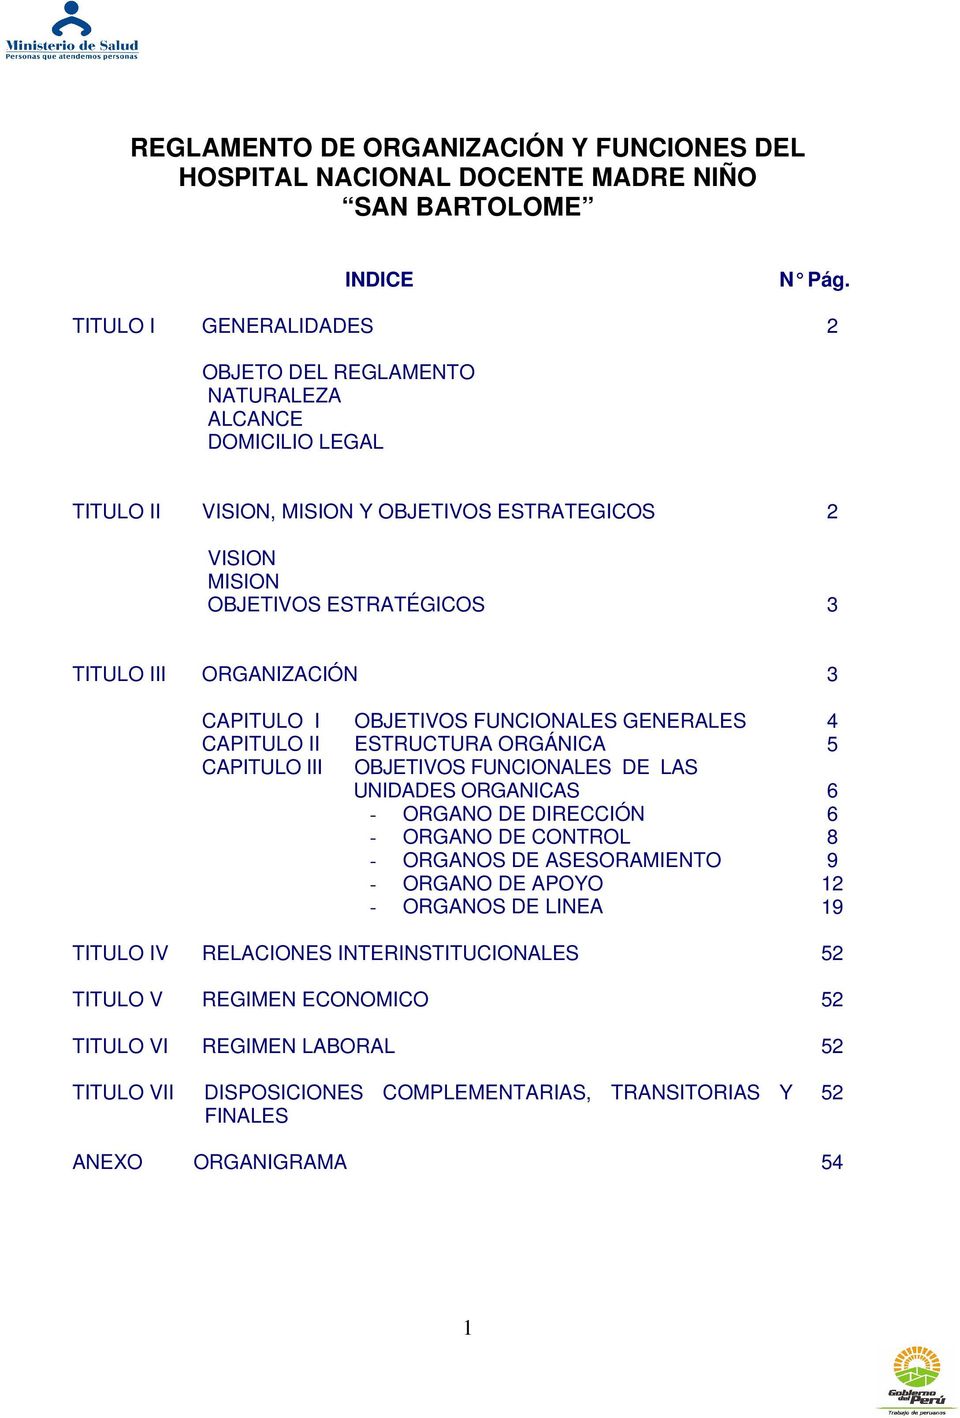 ESTRUCTURA ORGÁNICA OBJETIVOS FUNCIONALES DE LAS UNIDADES ORGANICAS - ORGANO DE DIRECCIÓN - ORGANO DE CONTROL - ORGANOS DE ASESORAMIENTO - ORGANO DE APOYO - ORGANOS DE LINEA 4 5 6 6 8 9 12